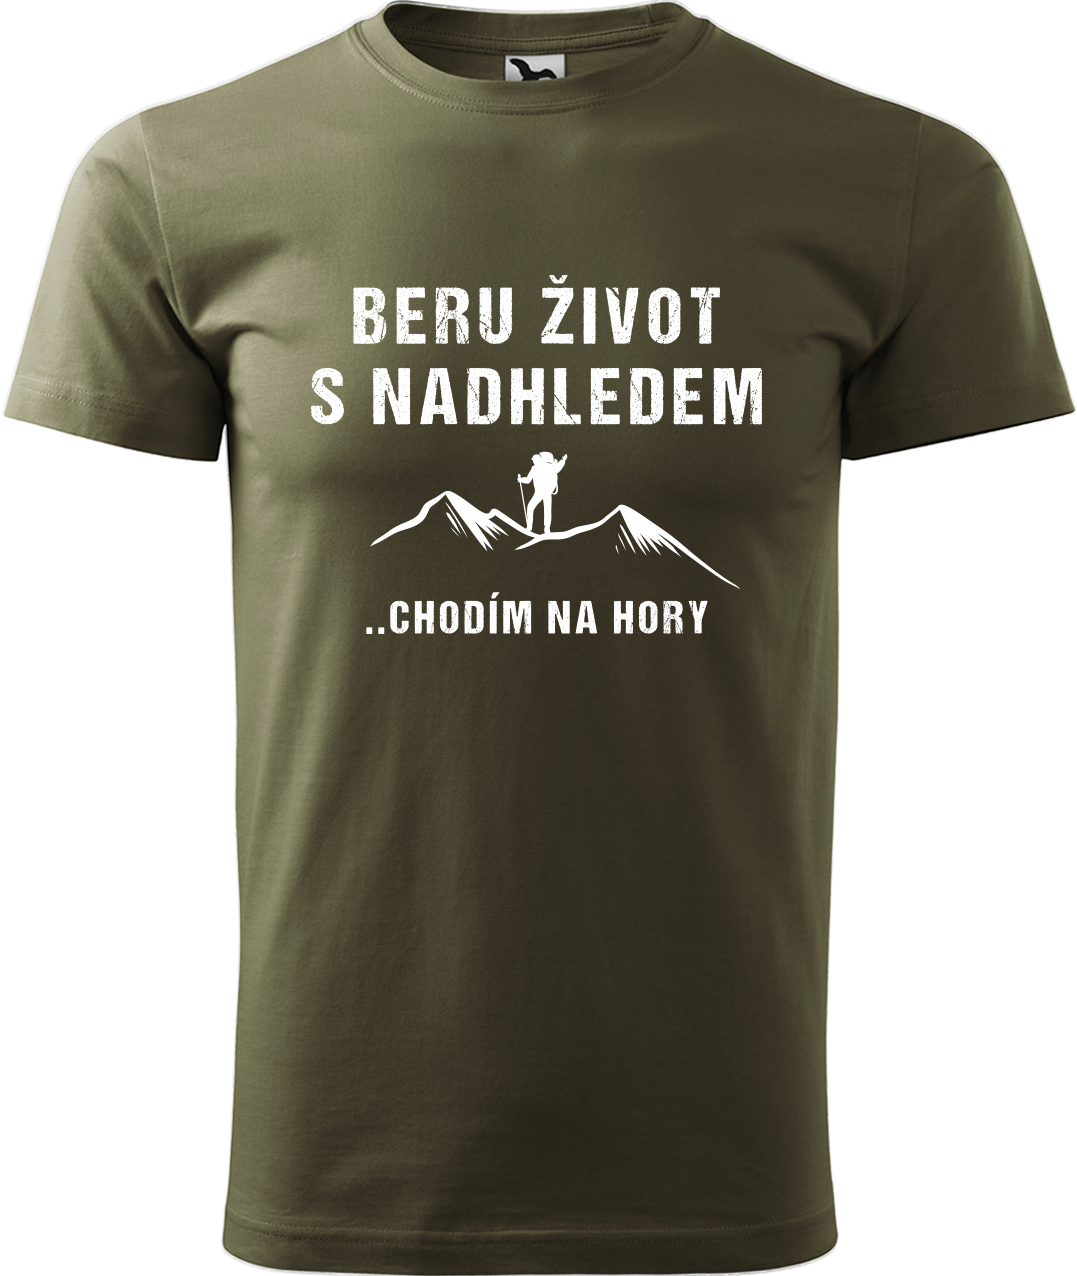 Pánské tričko na hory - Beru život s nadhledem, chodím na hory Velikost: XL, Barva: Military (69), Střih: pánský